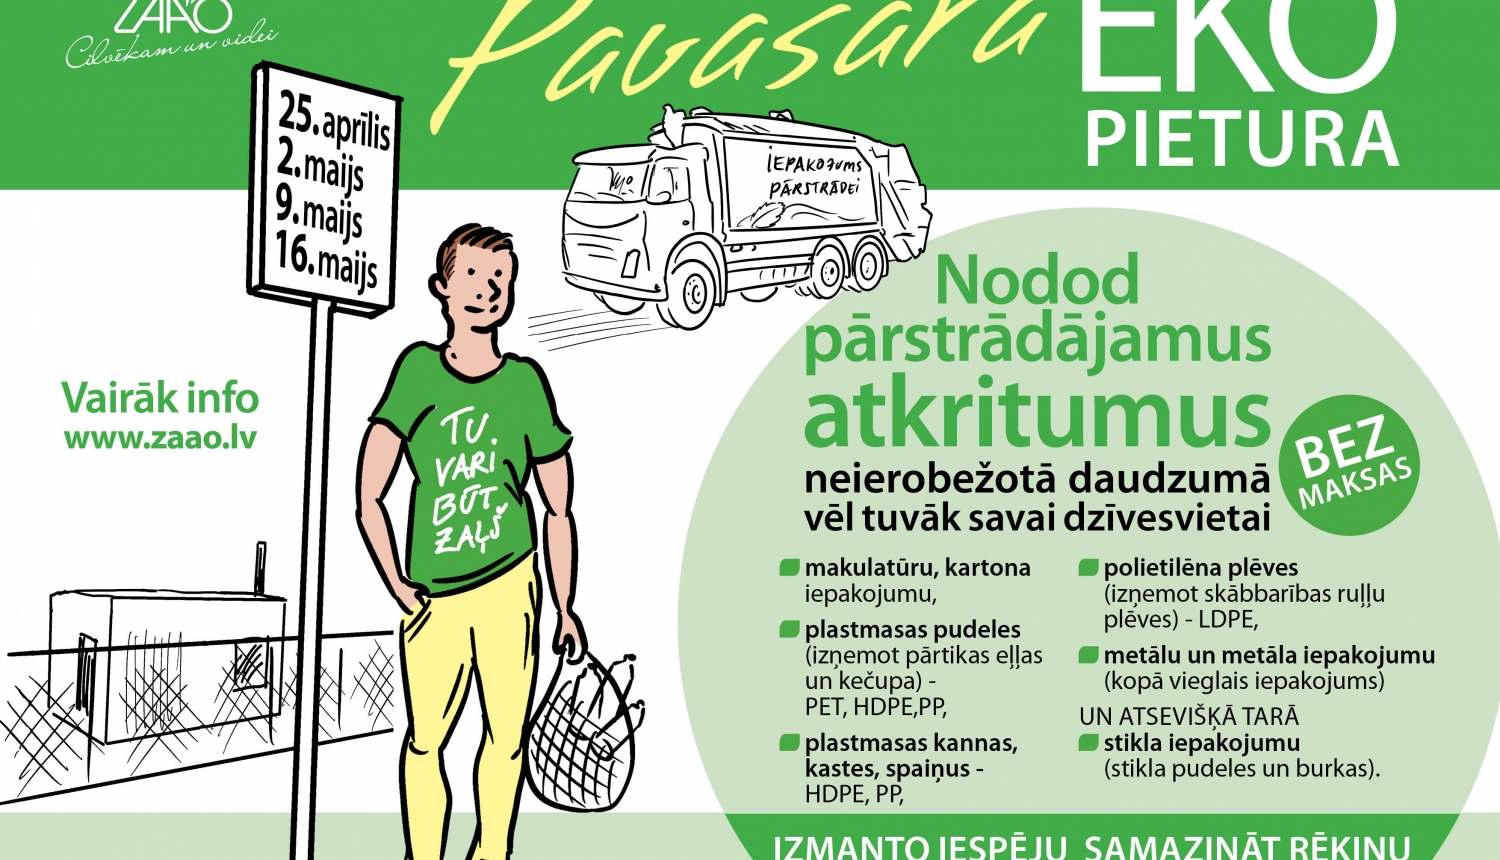 Pārstrādājamo atkritumu vākšanas akcija “Pavasara EKO pietura” pie Tavām mājām